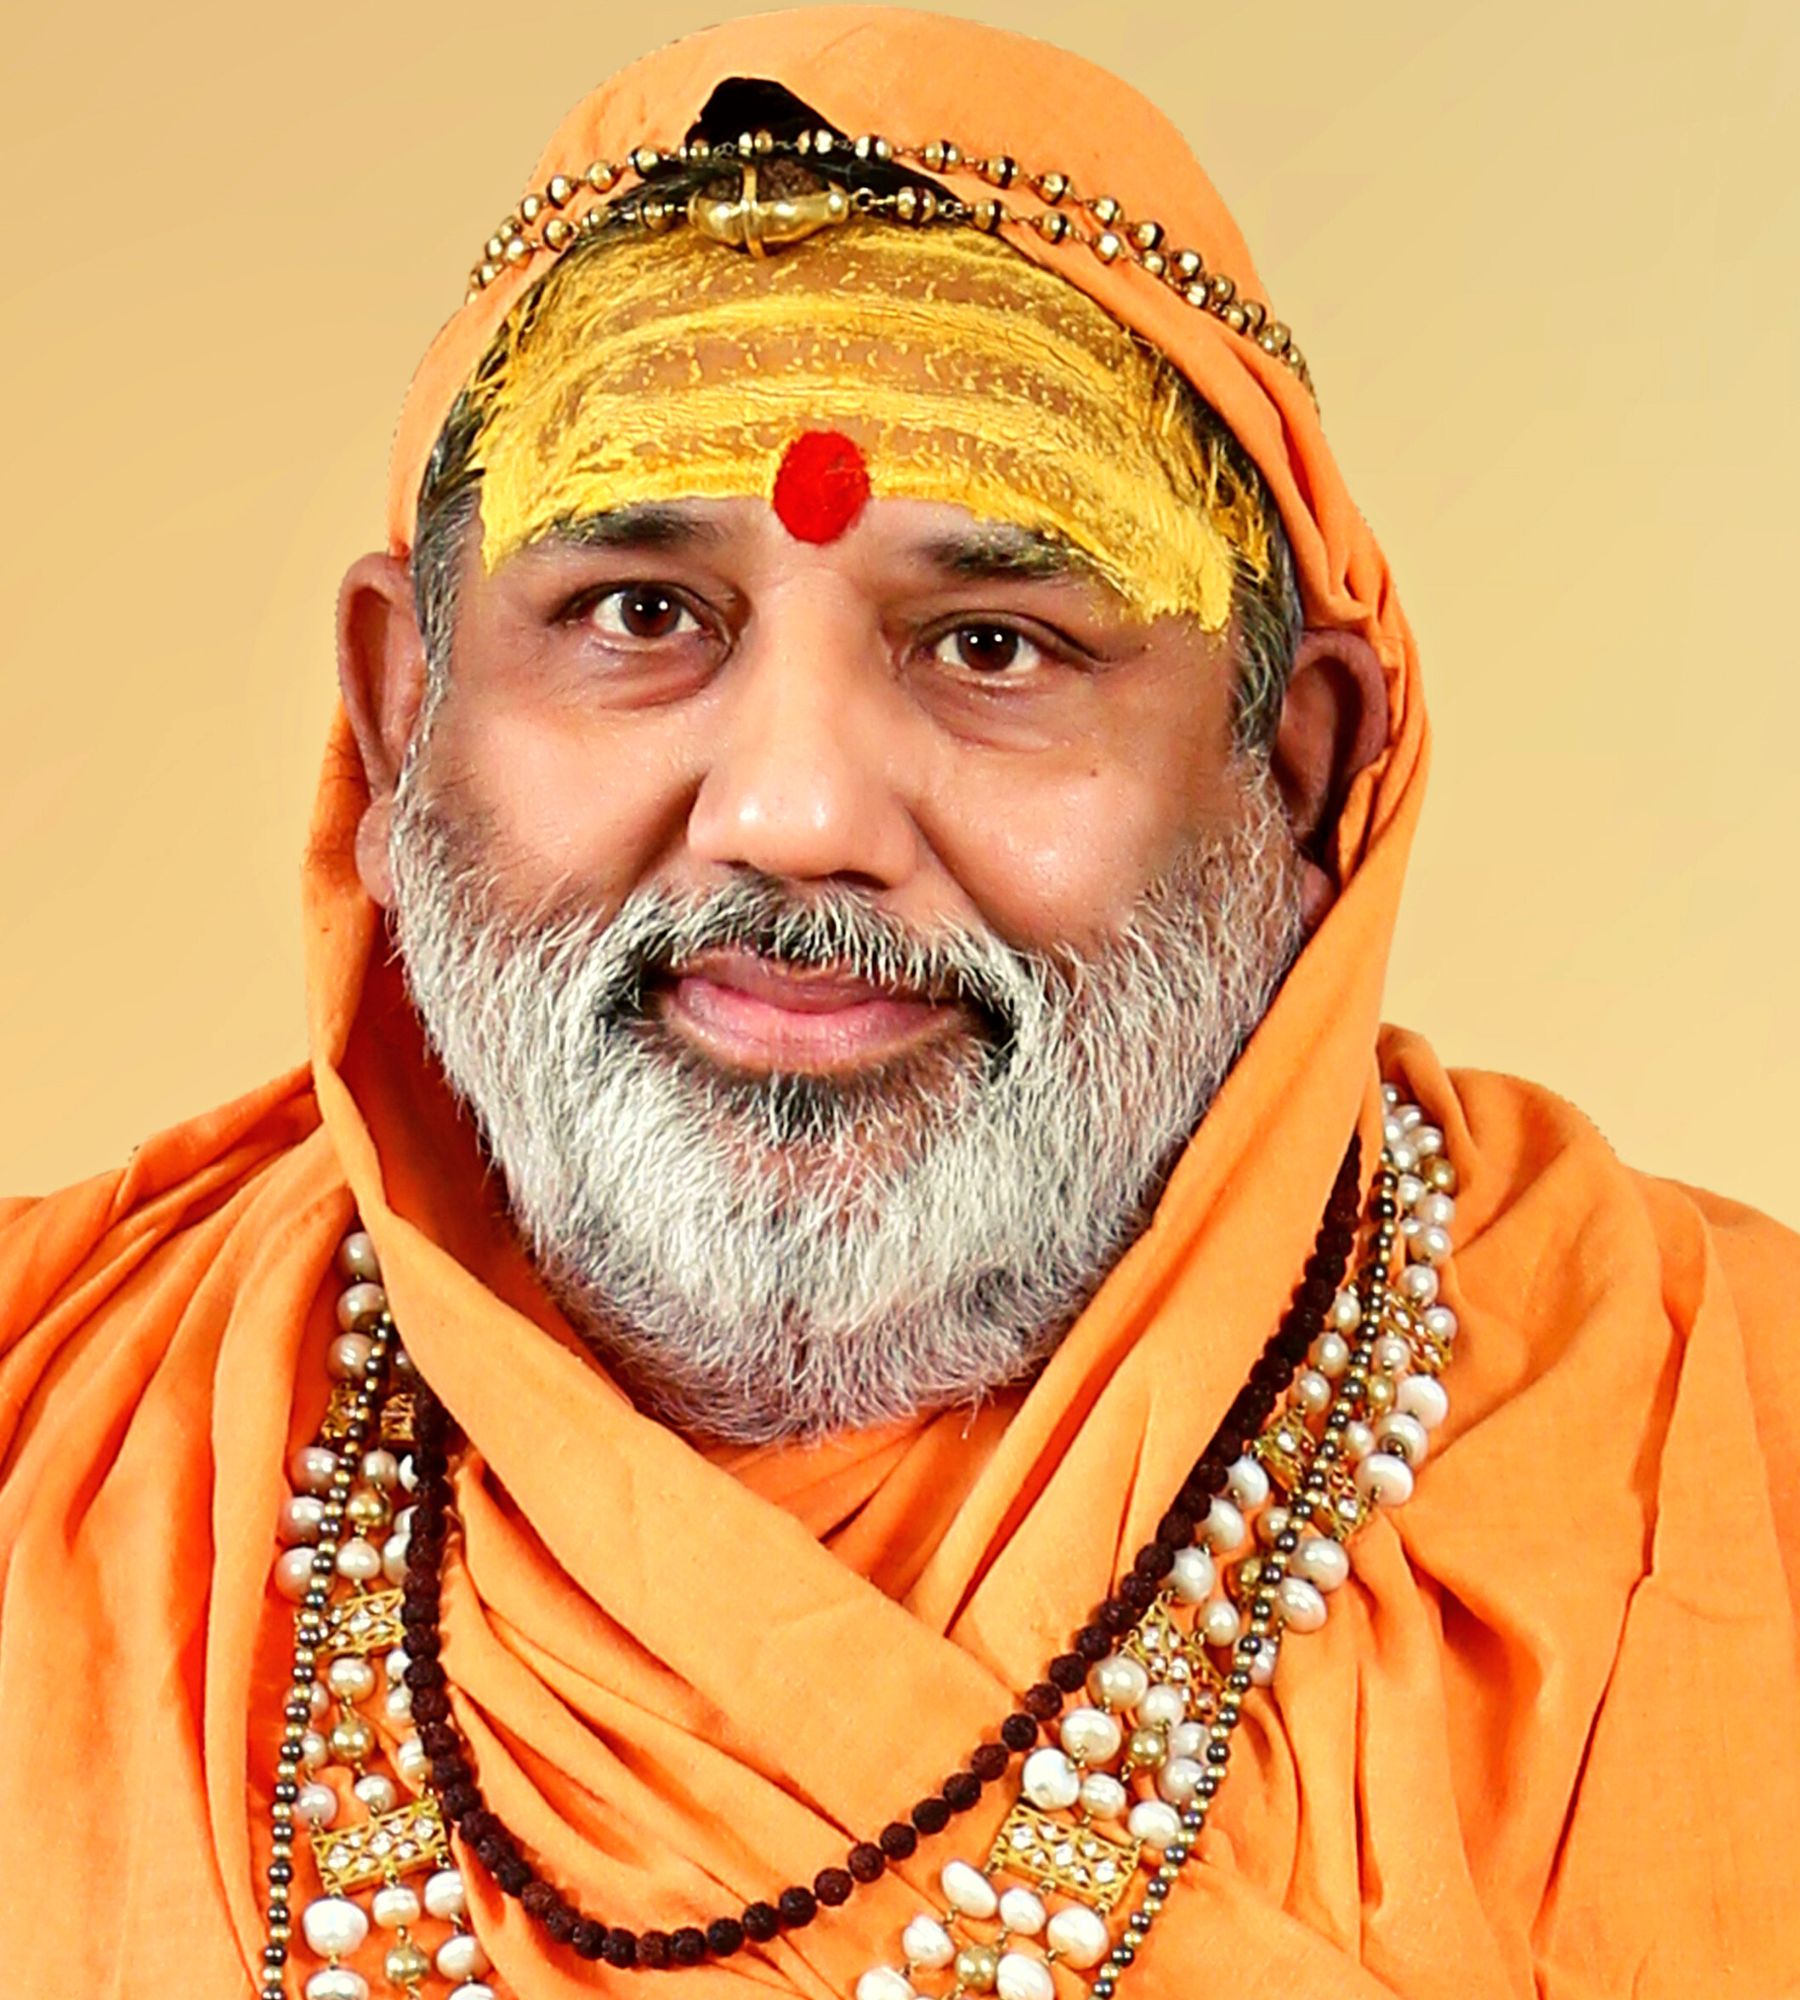 Anant shri Swami Achyutanand Maharaj Shri